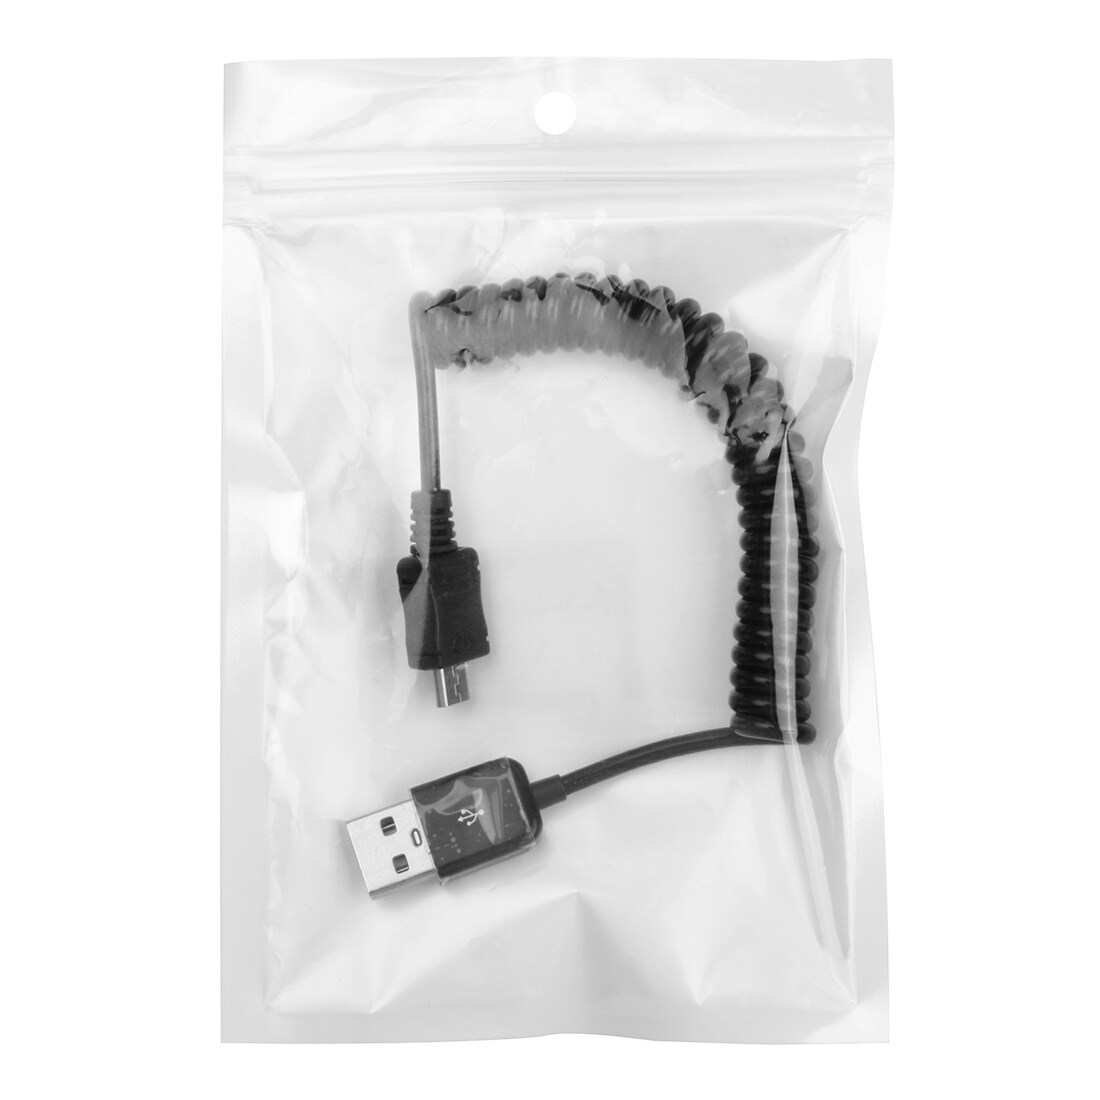 Flokefri uttrekkbar Micro-USB kabel - 24-90cm lang